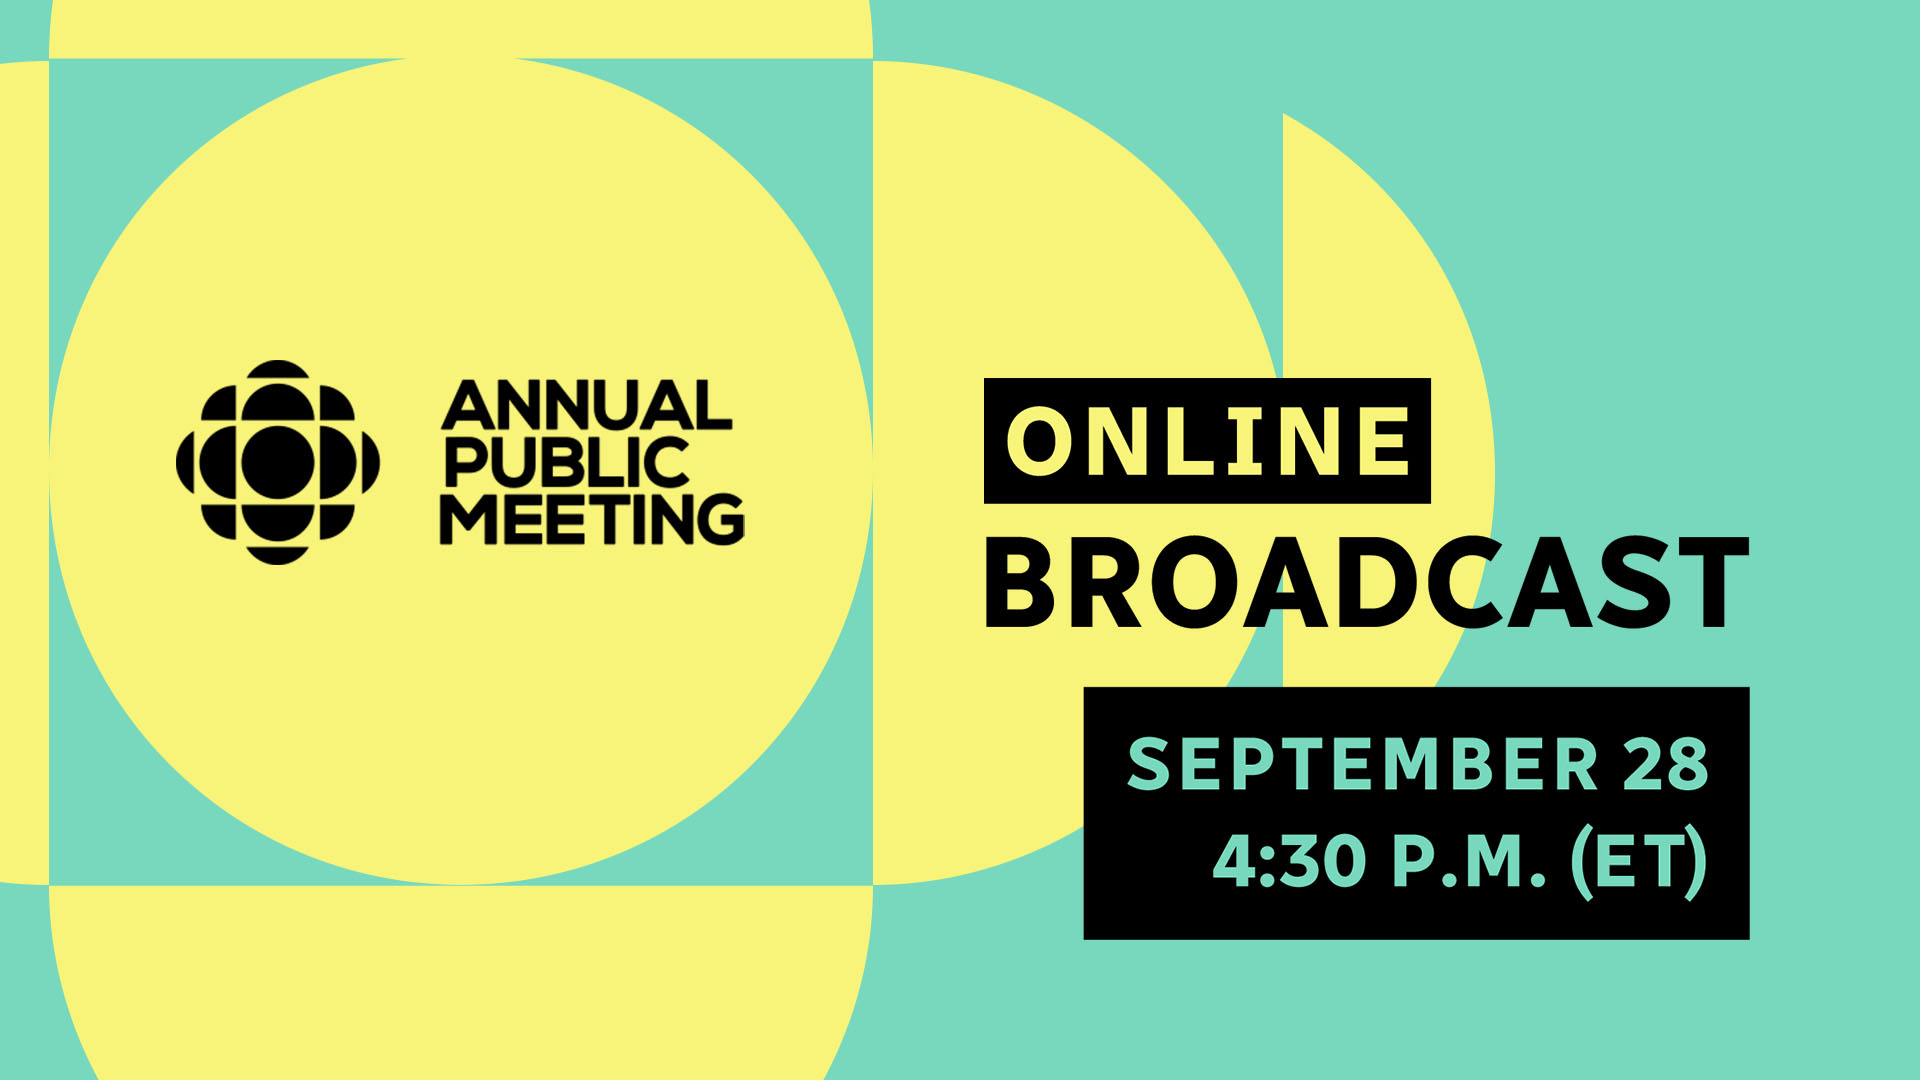 BC/Radio-Canada’s Annual Public Meeting Online